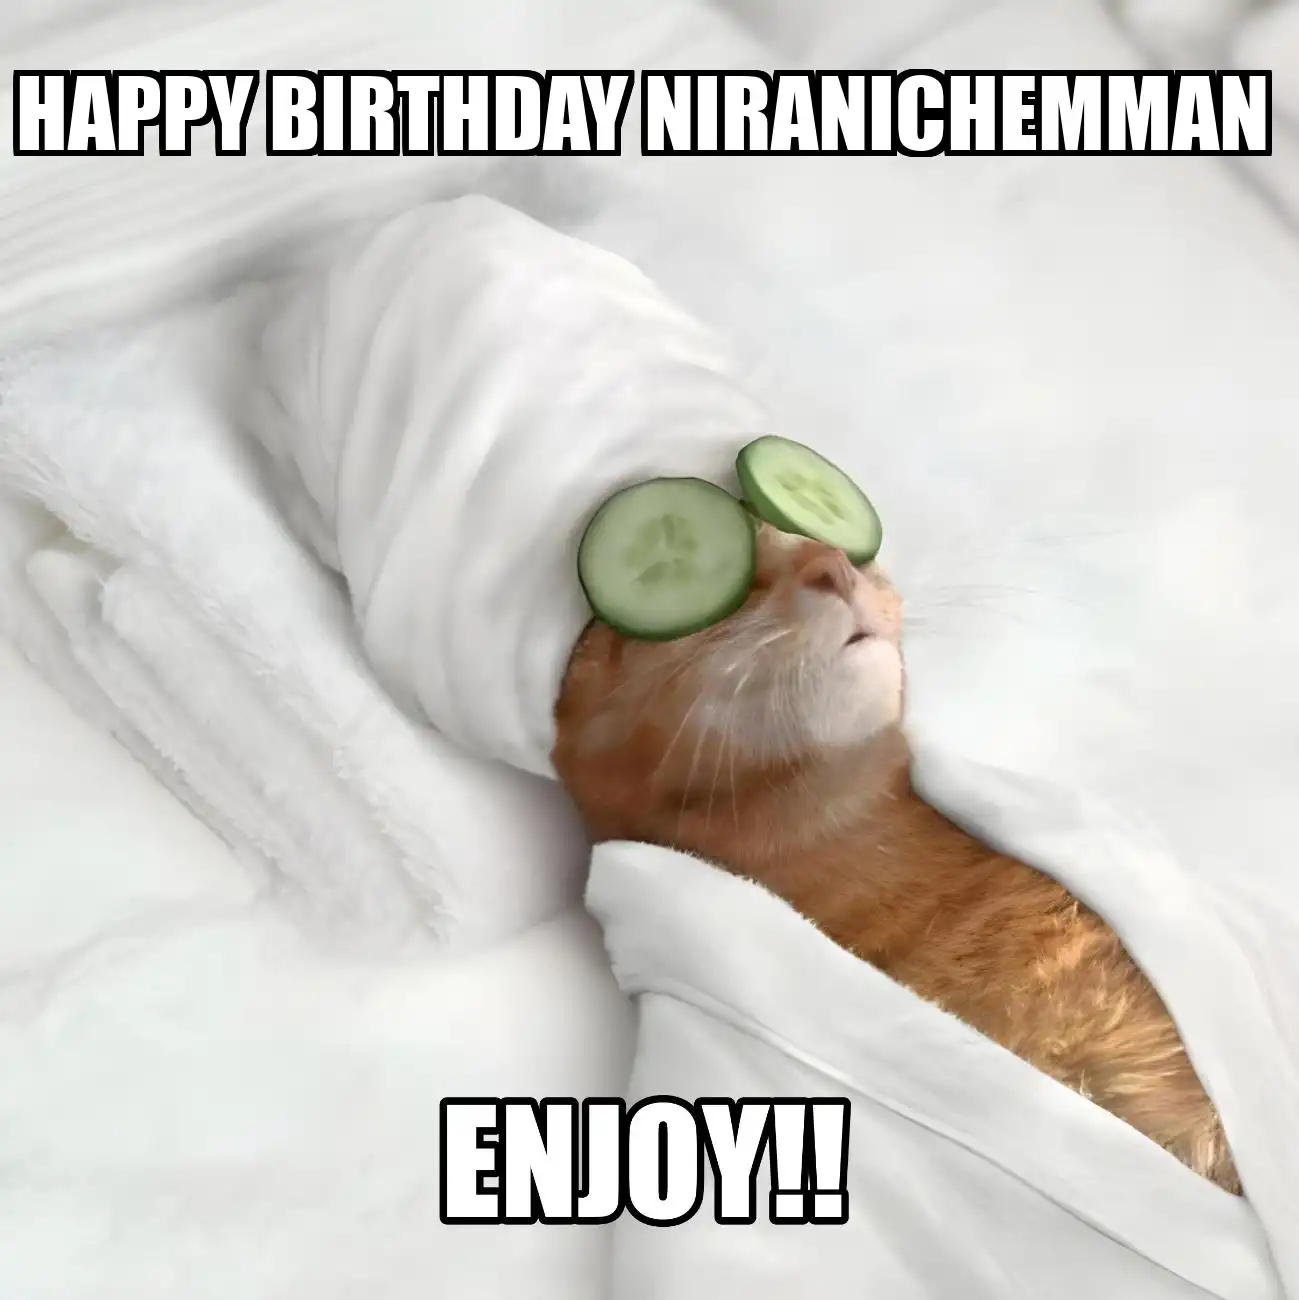 Happy Birthday Niranichemman Enjoy Cat Meme